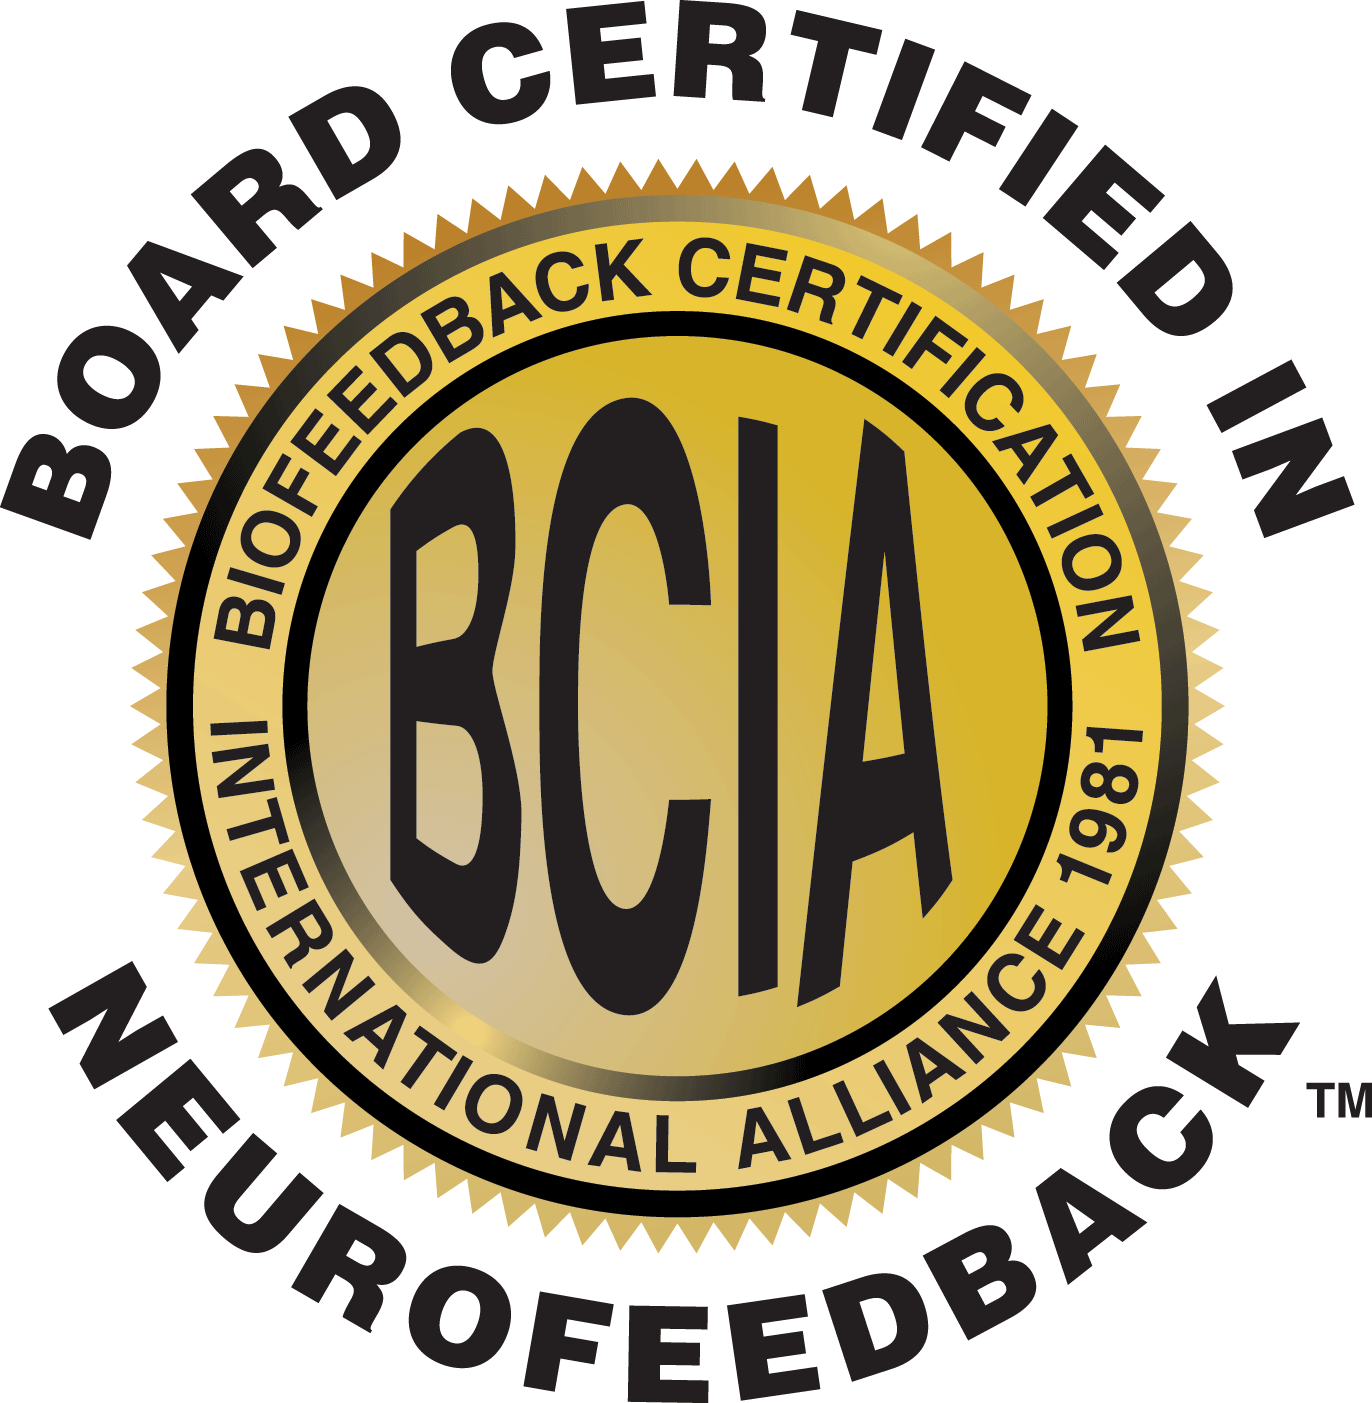 BCIA_BoardCertifiedInNeurofeedback_Gold